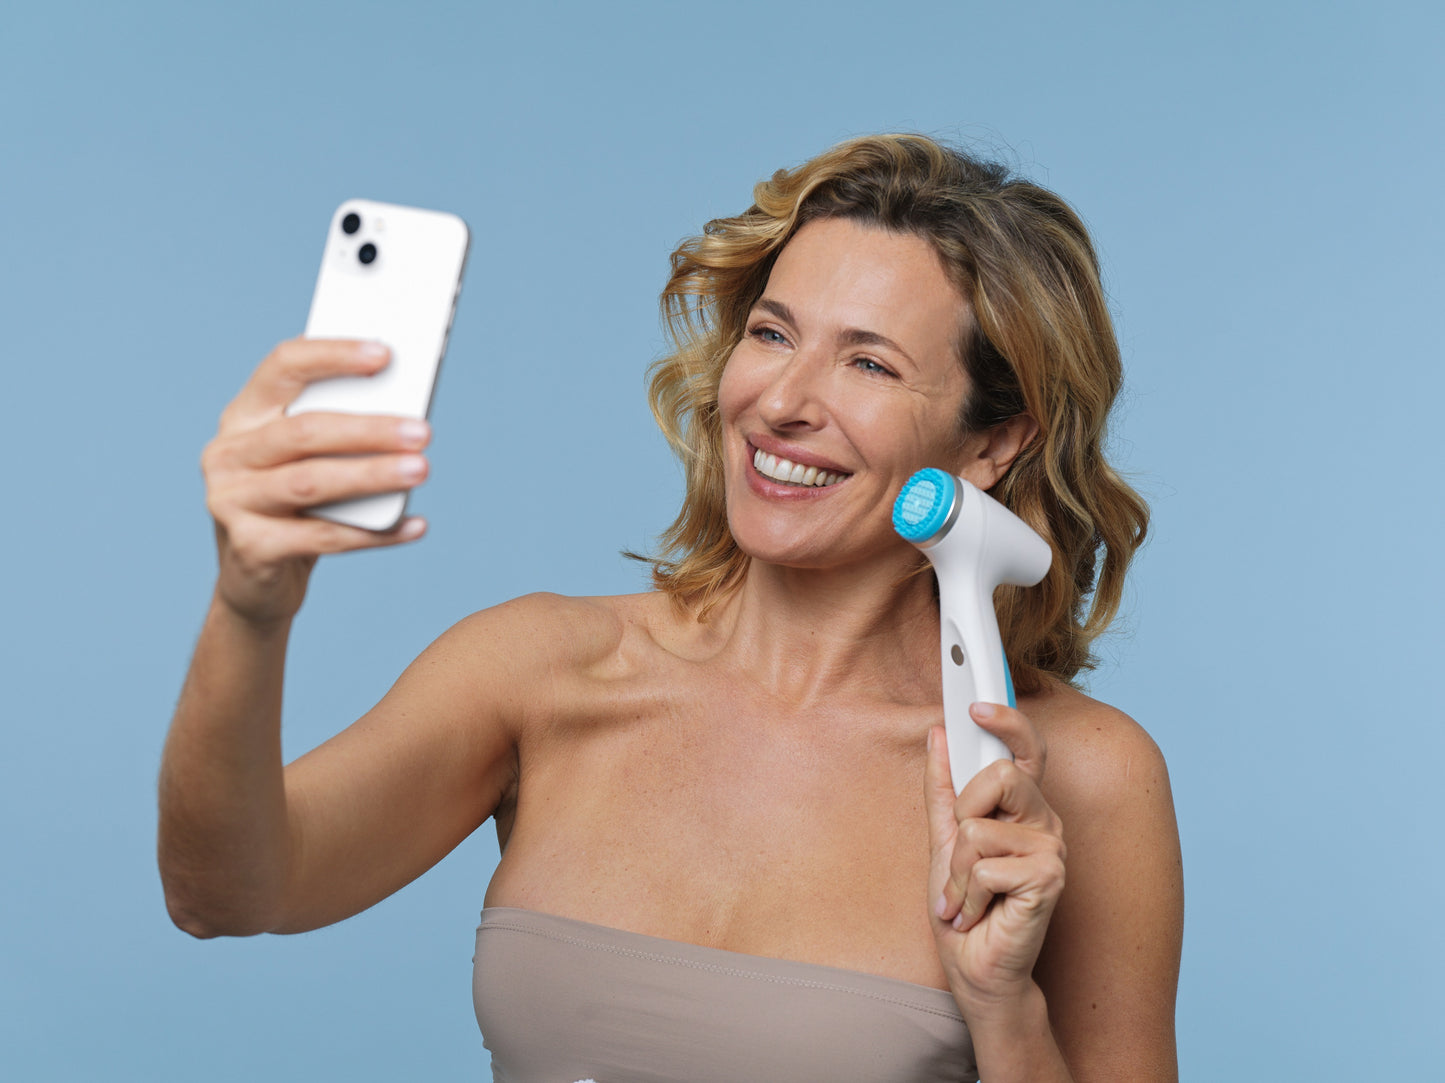 Klant met LumiSpa iO en mobiele telefoon - LumiSpa iO kan via Blutetooth worden gekoppeld met de Nu Skin Vera app op je mobiele telefoon om je dichter bij je huidverzorgingsdoelen te brengen met intelligente IoT-technologie (Internet of Things).